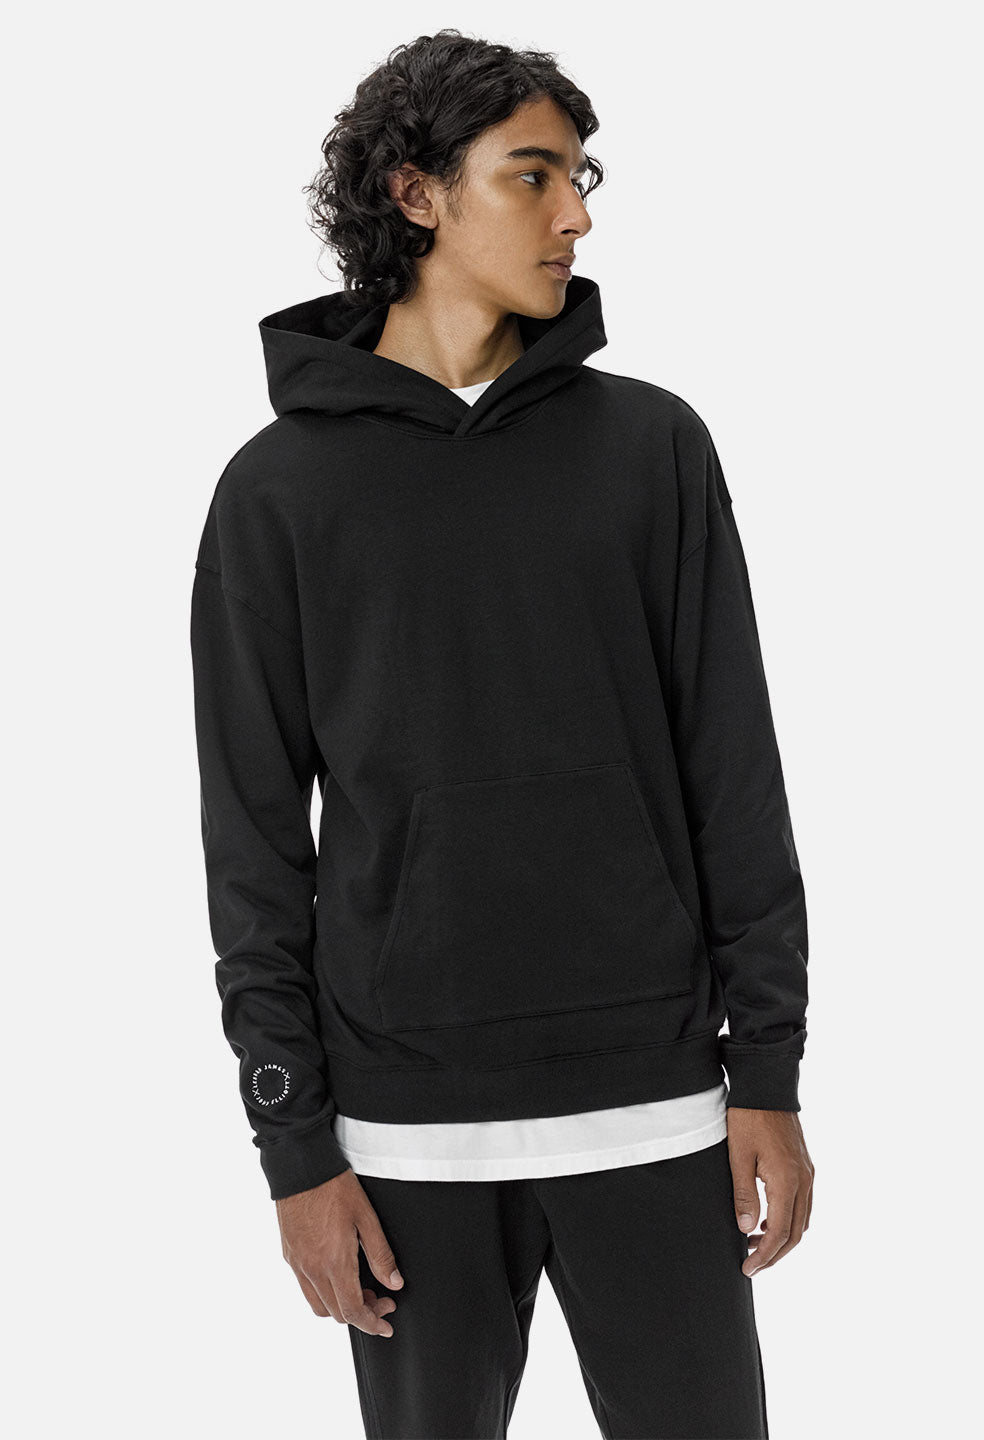 lebron james black hoodie